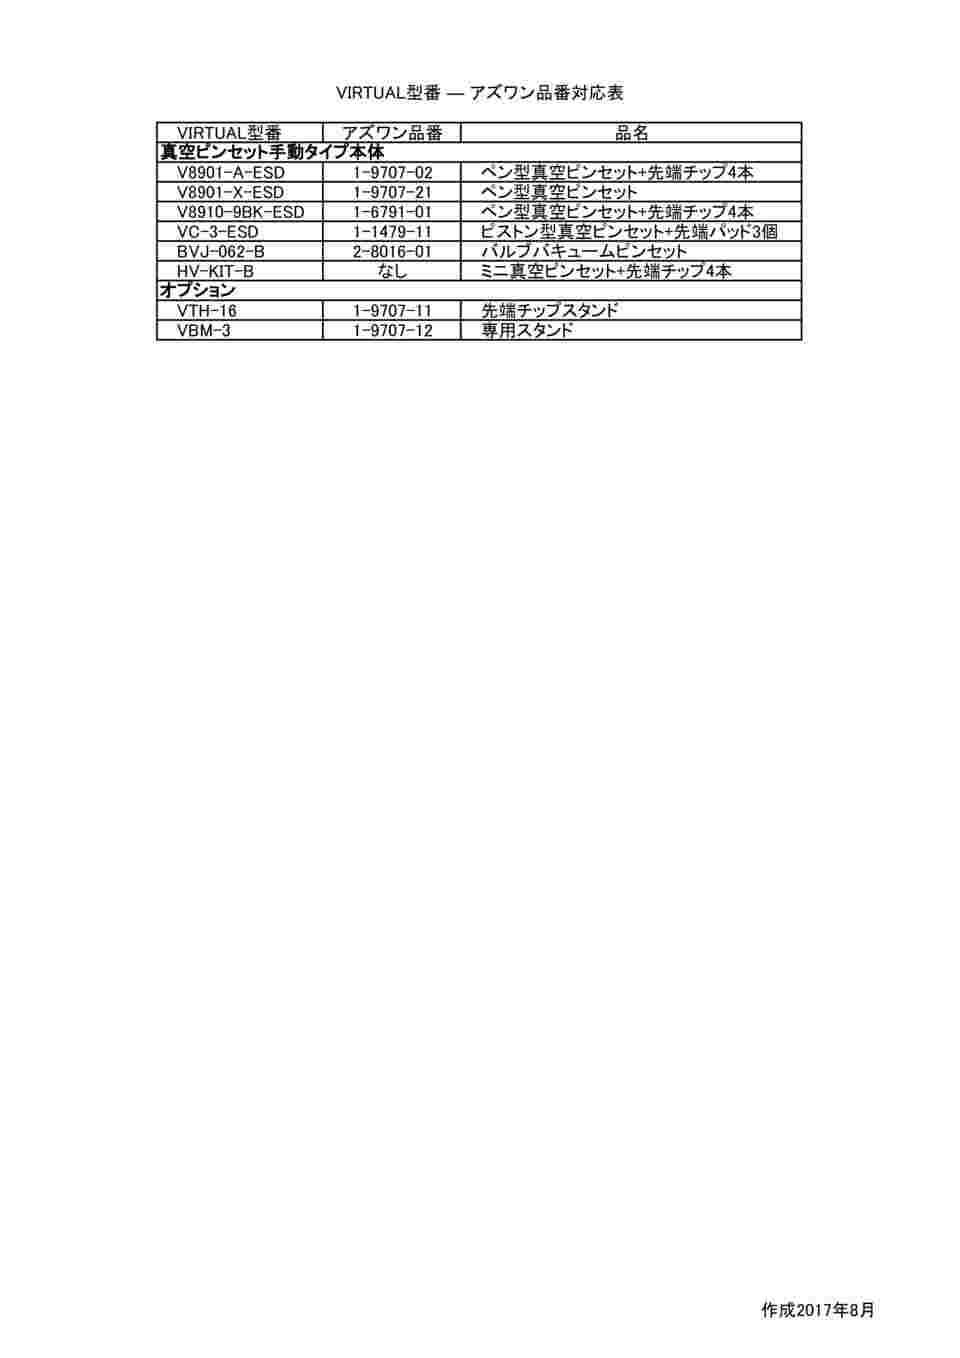 1-6791-01 ピンセット エコノミカルーペンバッグ V8910-9BK-ESD 【AXEL